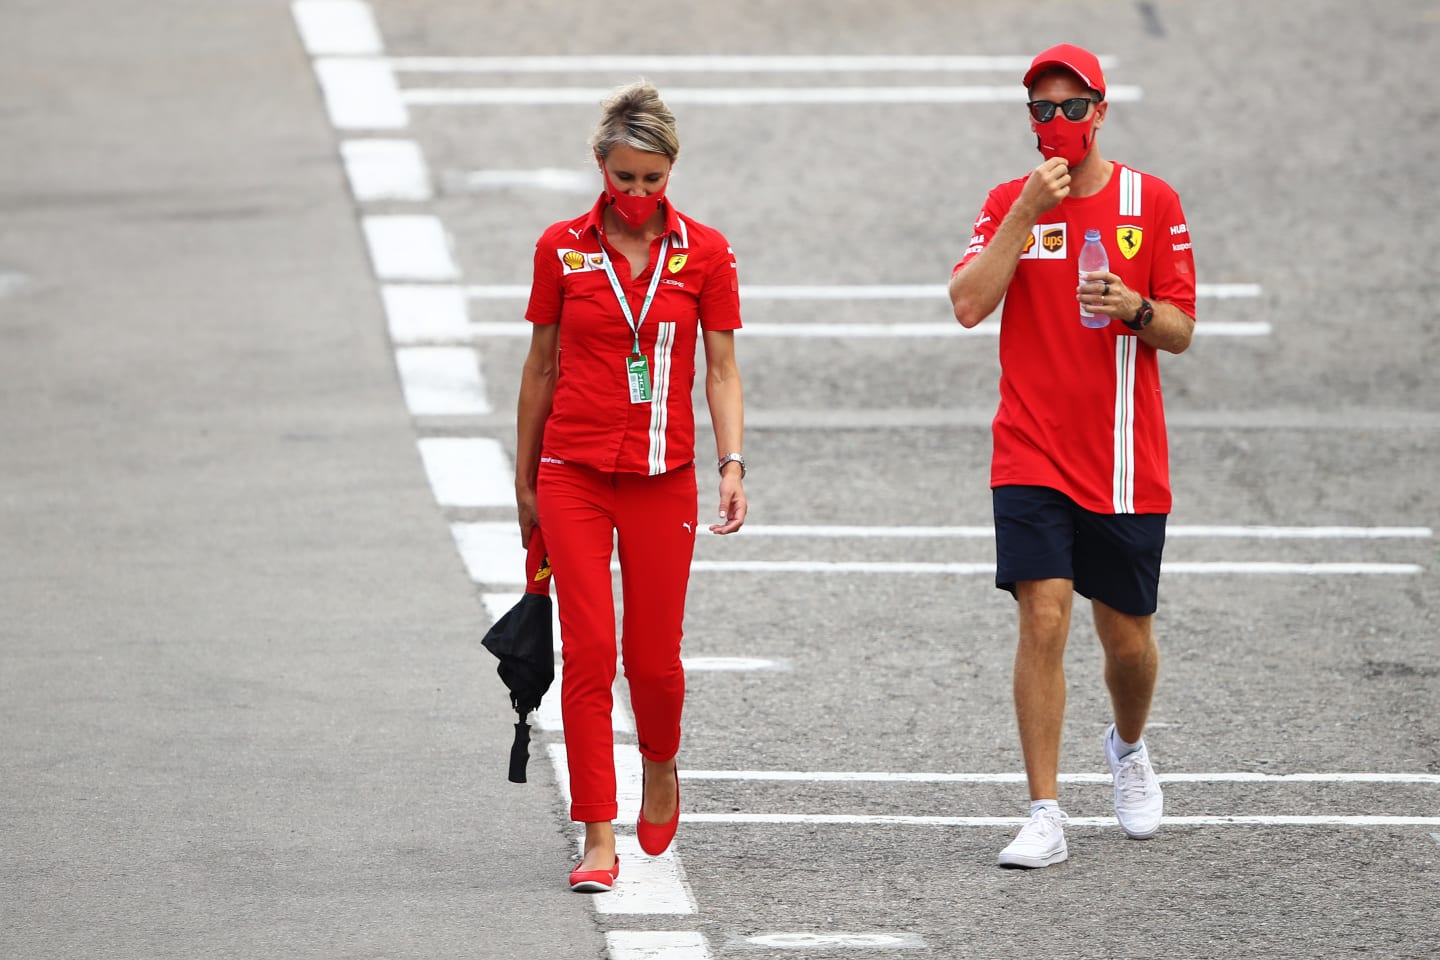 BARCELONA, SPAIN - AUGUST 13: Sebastian Vettel of Germany and Ferrari walks in the Paddock during